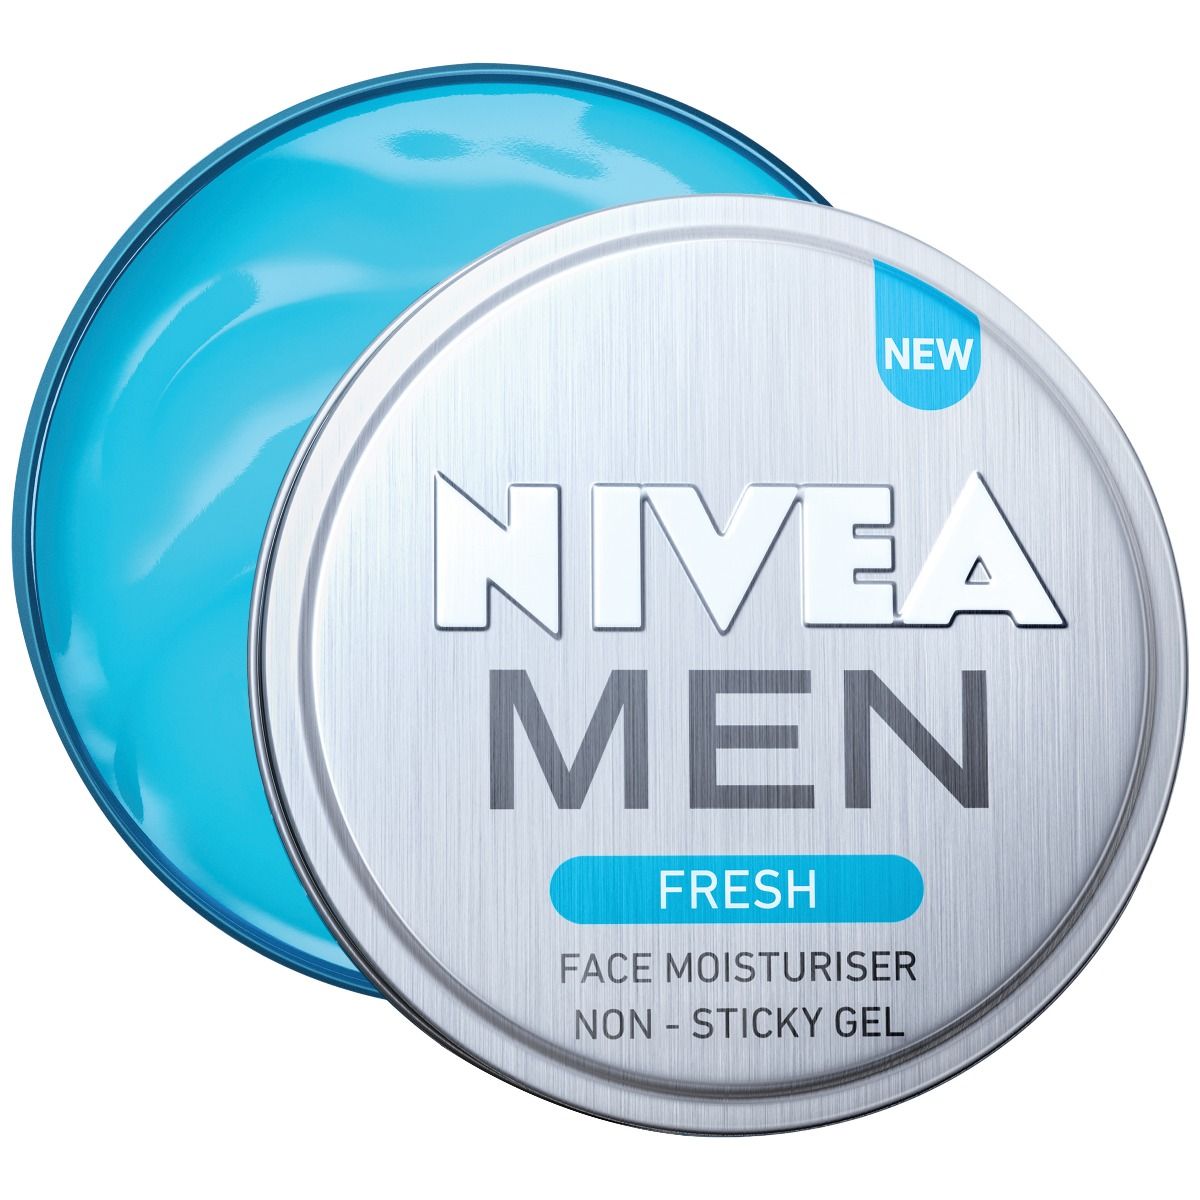 Buy Nivea Men Fresh Face Moisturiser Non - Sticky Gel, 75 ml Online